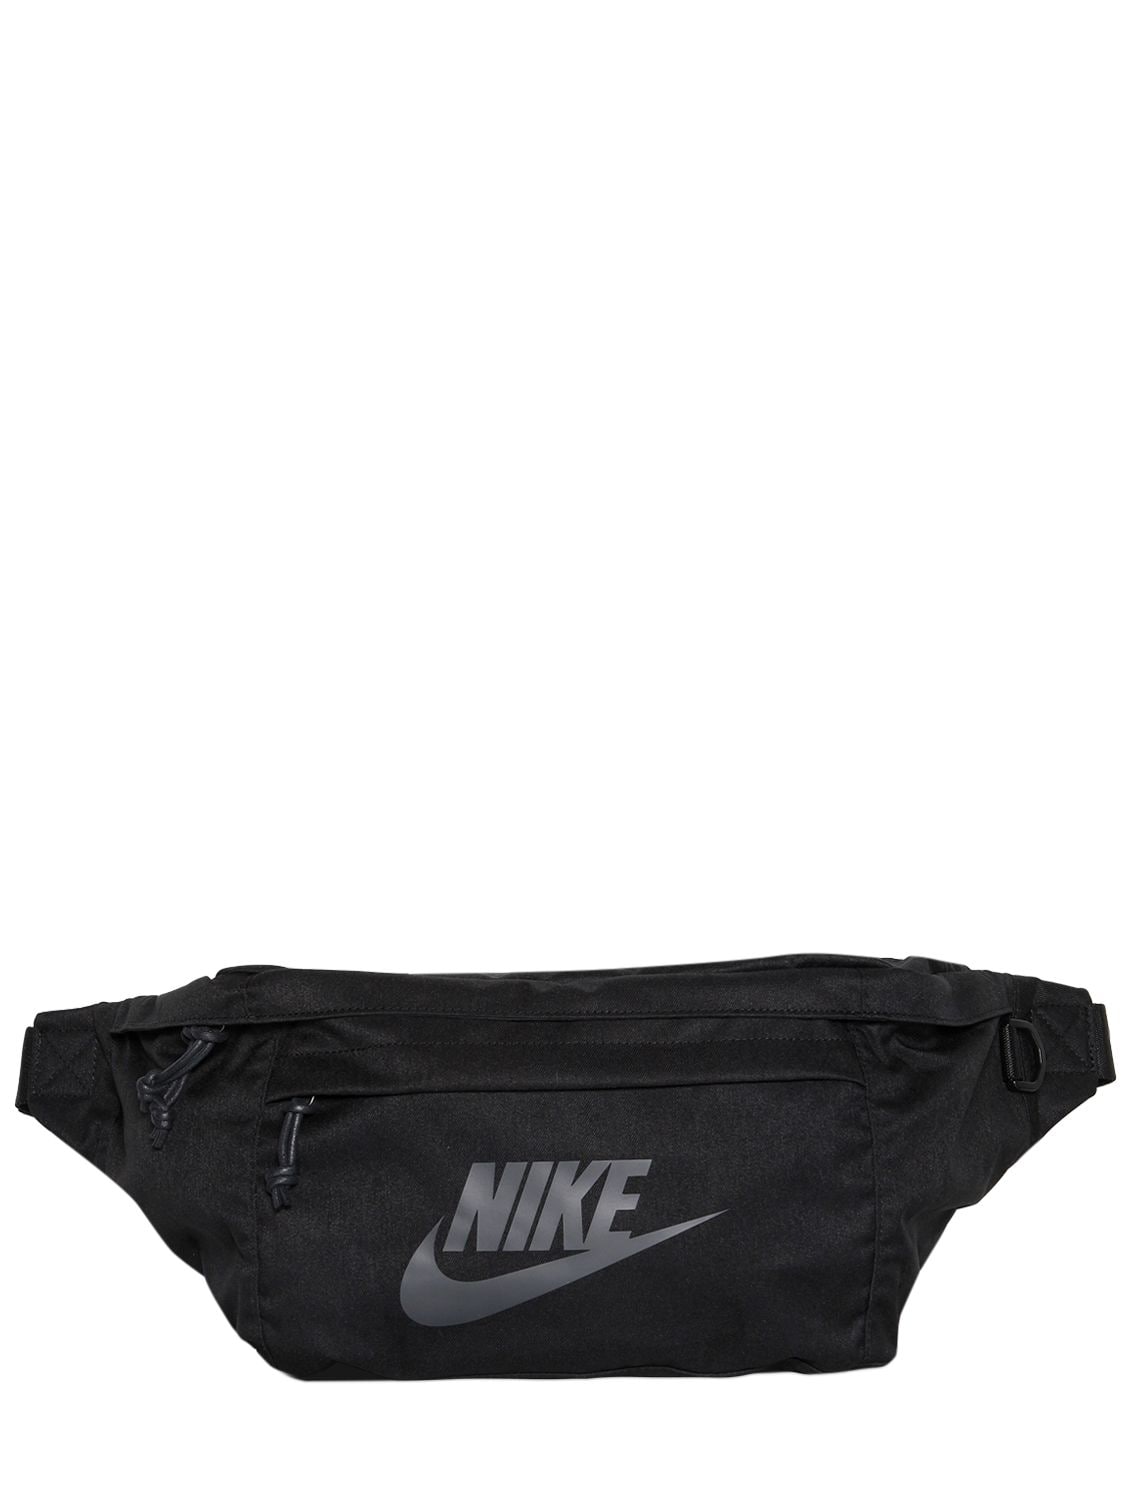 Nike Logo Printed Belt Pack In Black